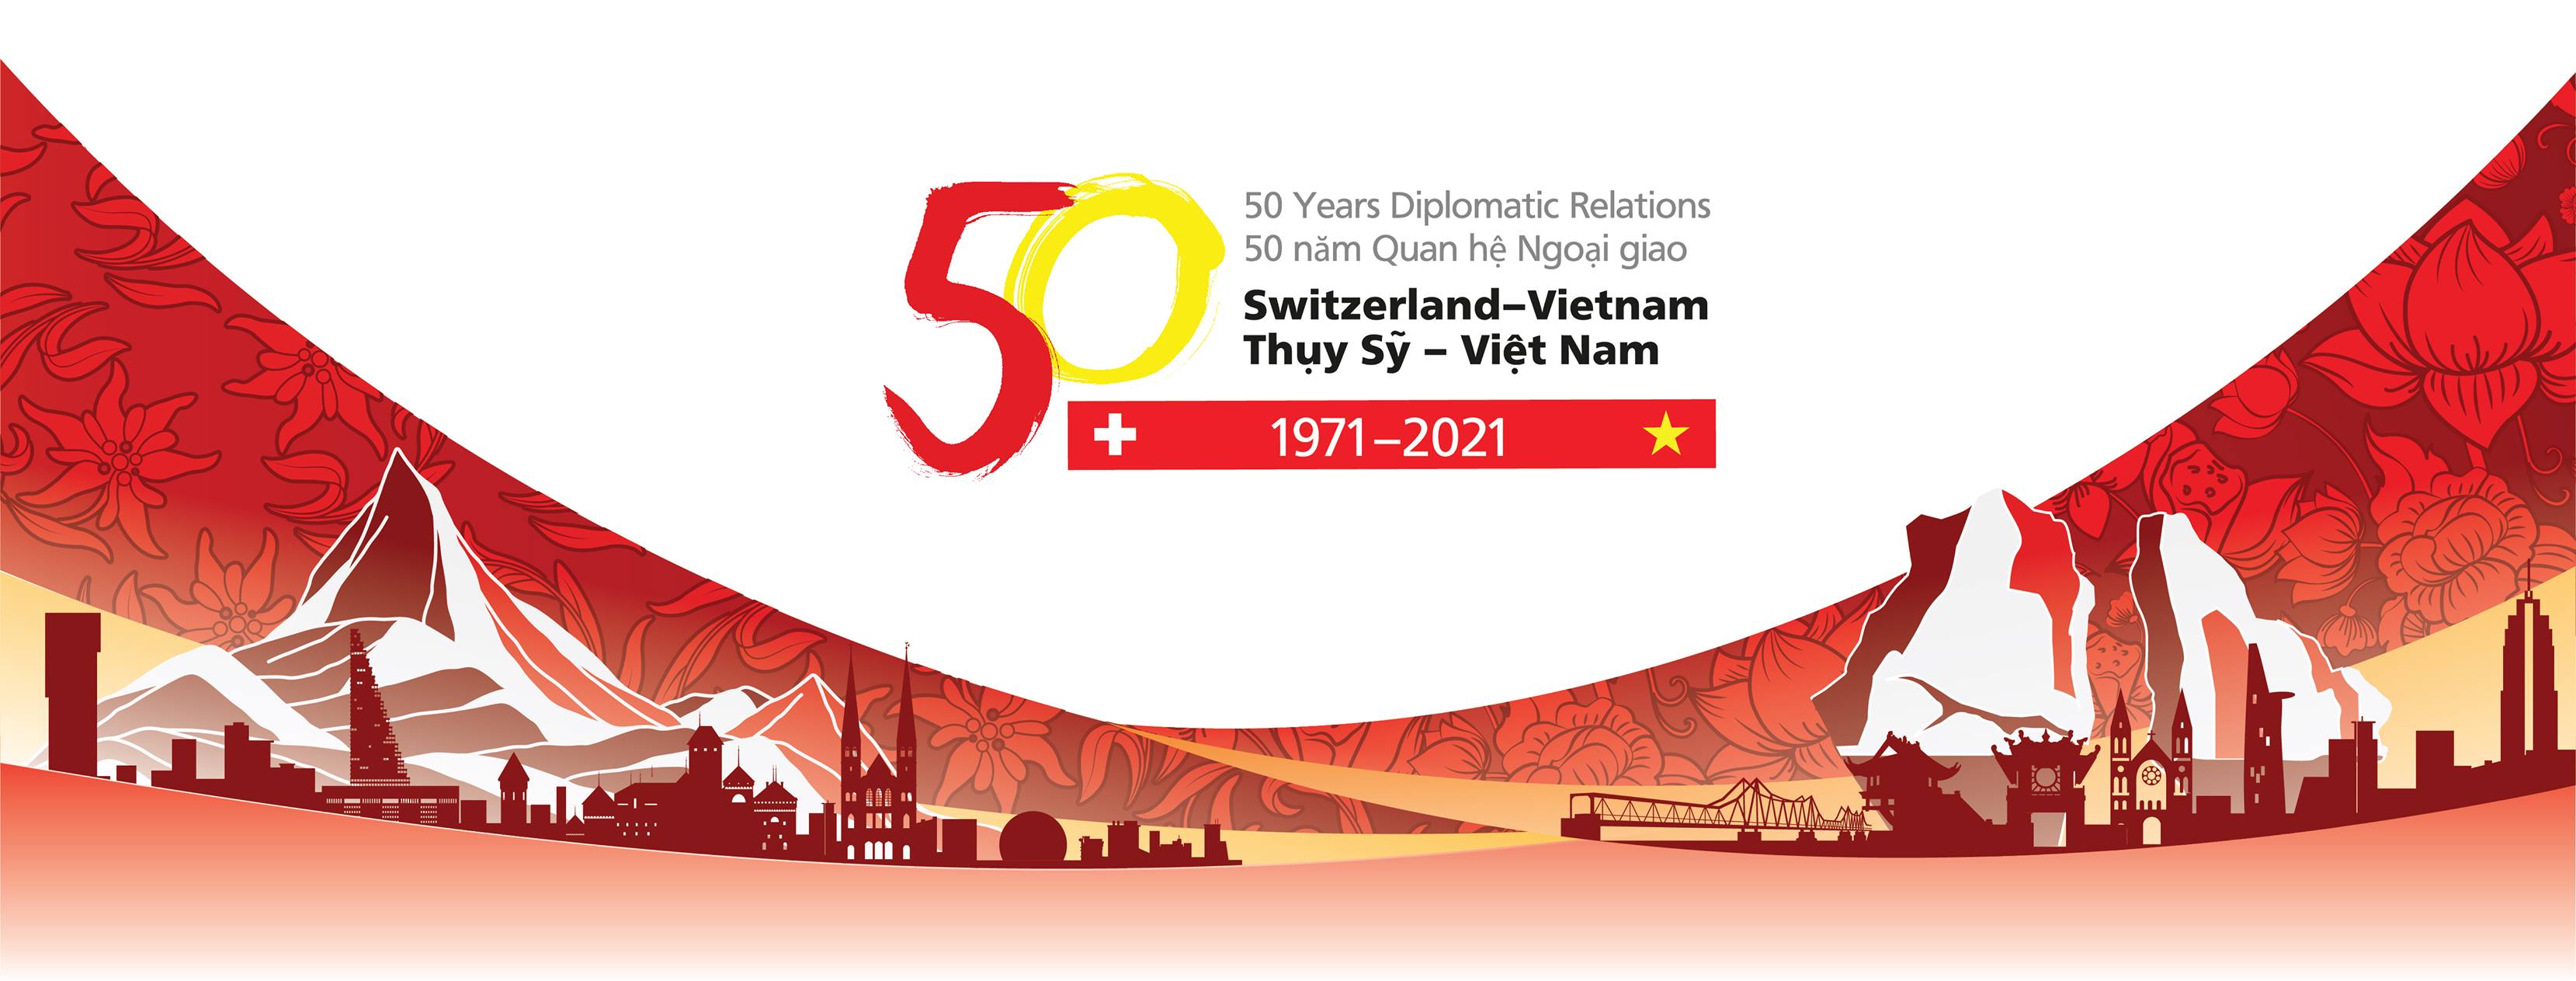 Một vài nét chính trong quan hệ ngoại giao Việt Nam - Thụy Sĩ sau 50 năm nhìn lại (1971 - 2021)